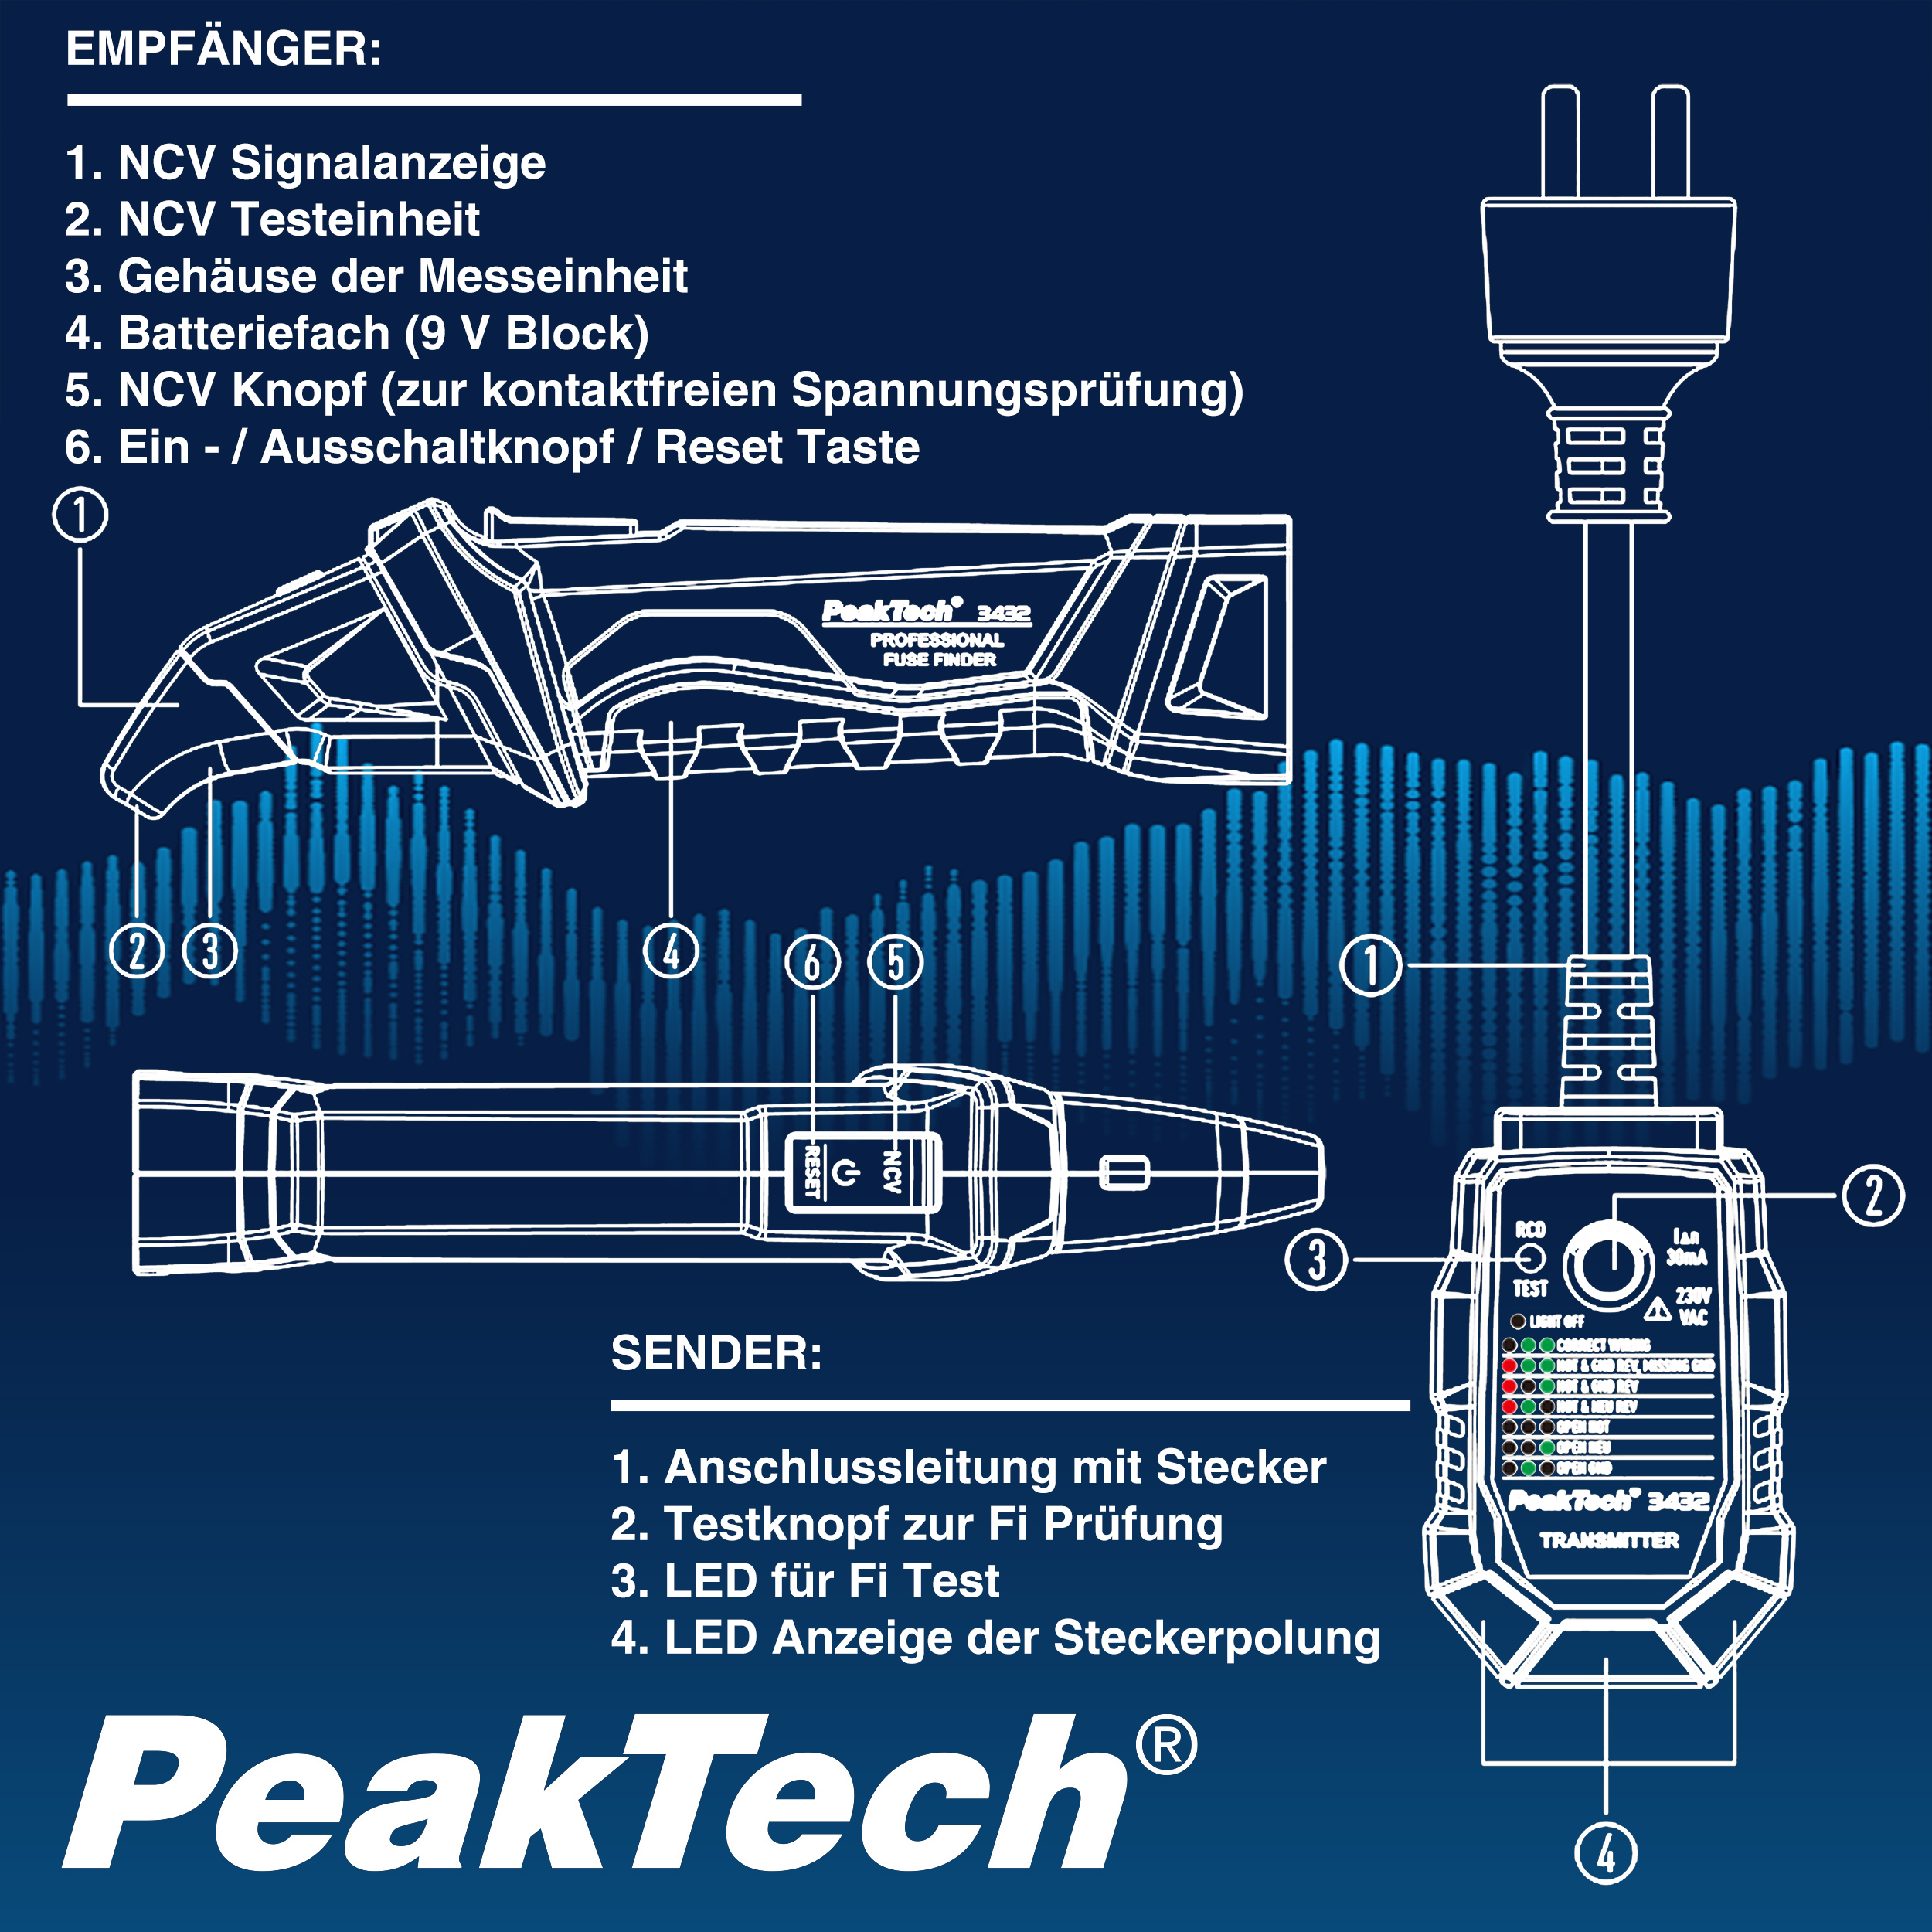 «PeakTech® P 3432» Buscador de fusibles con comprobador RCD